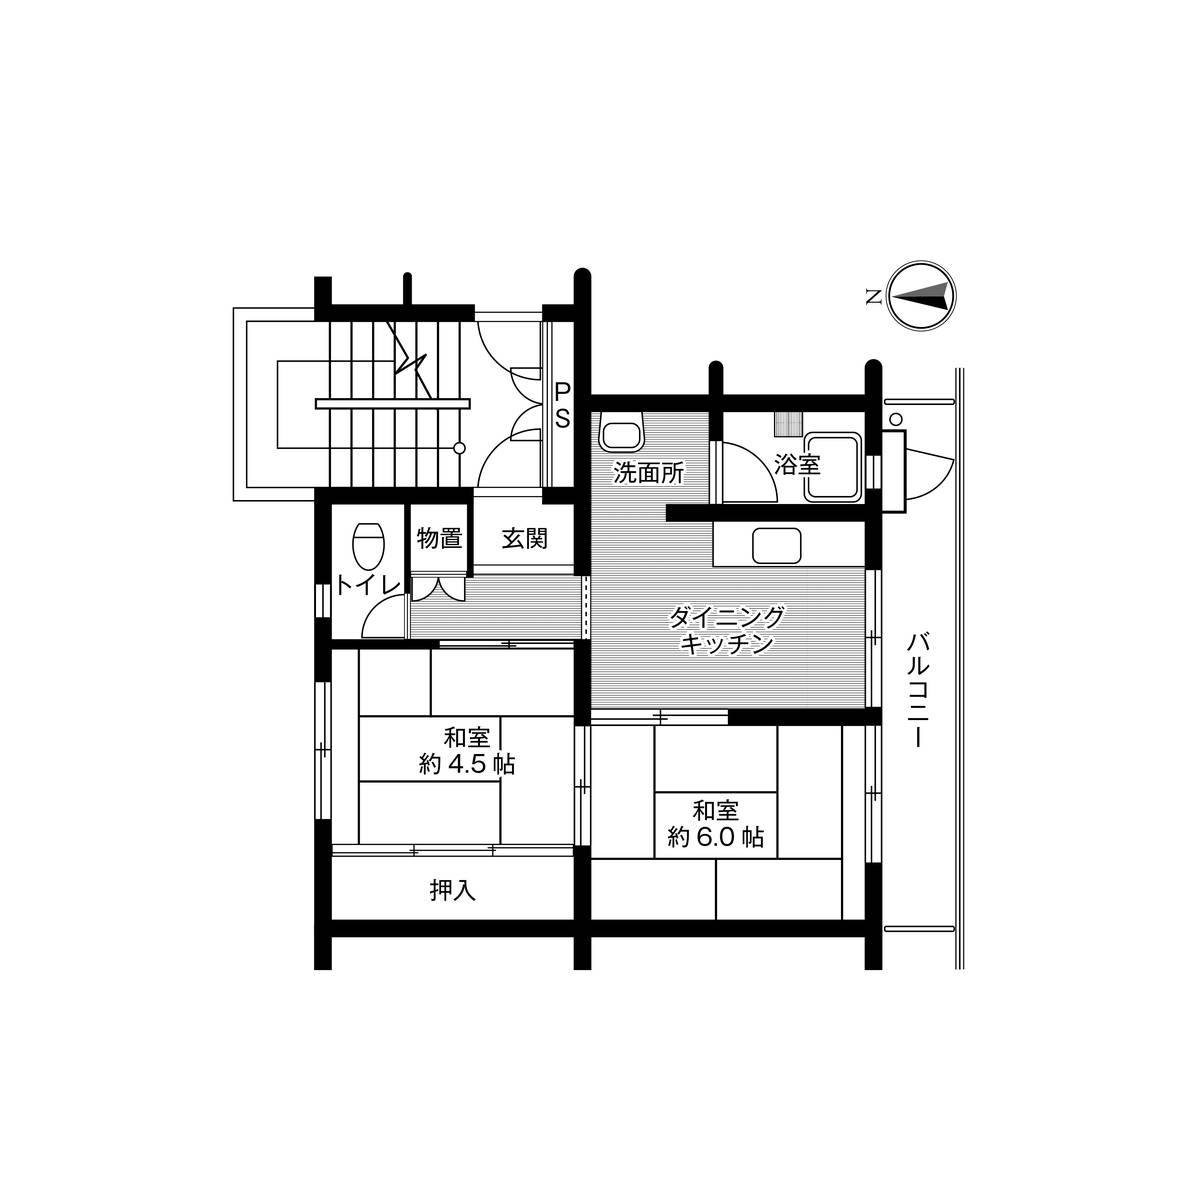 2DK floorplan of Village House Imari in Imari-shi